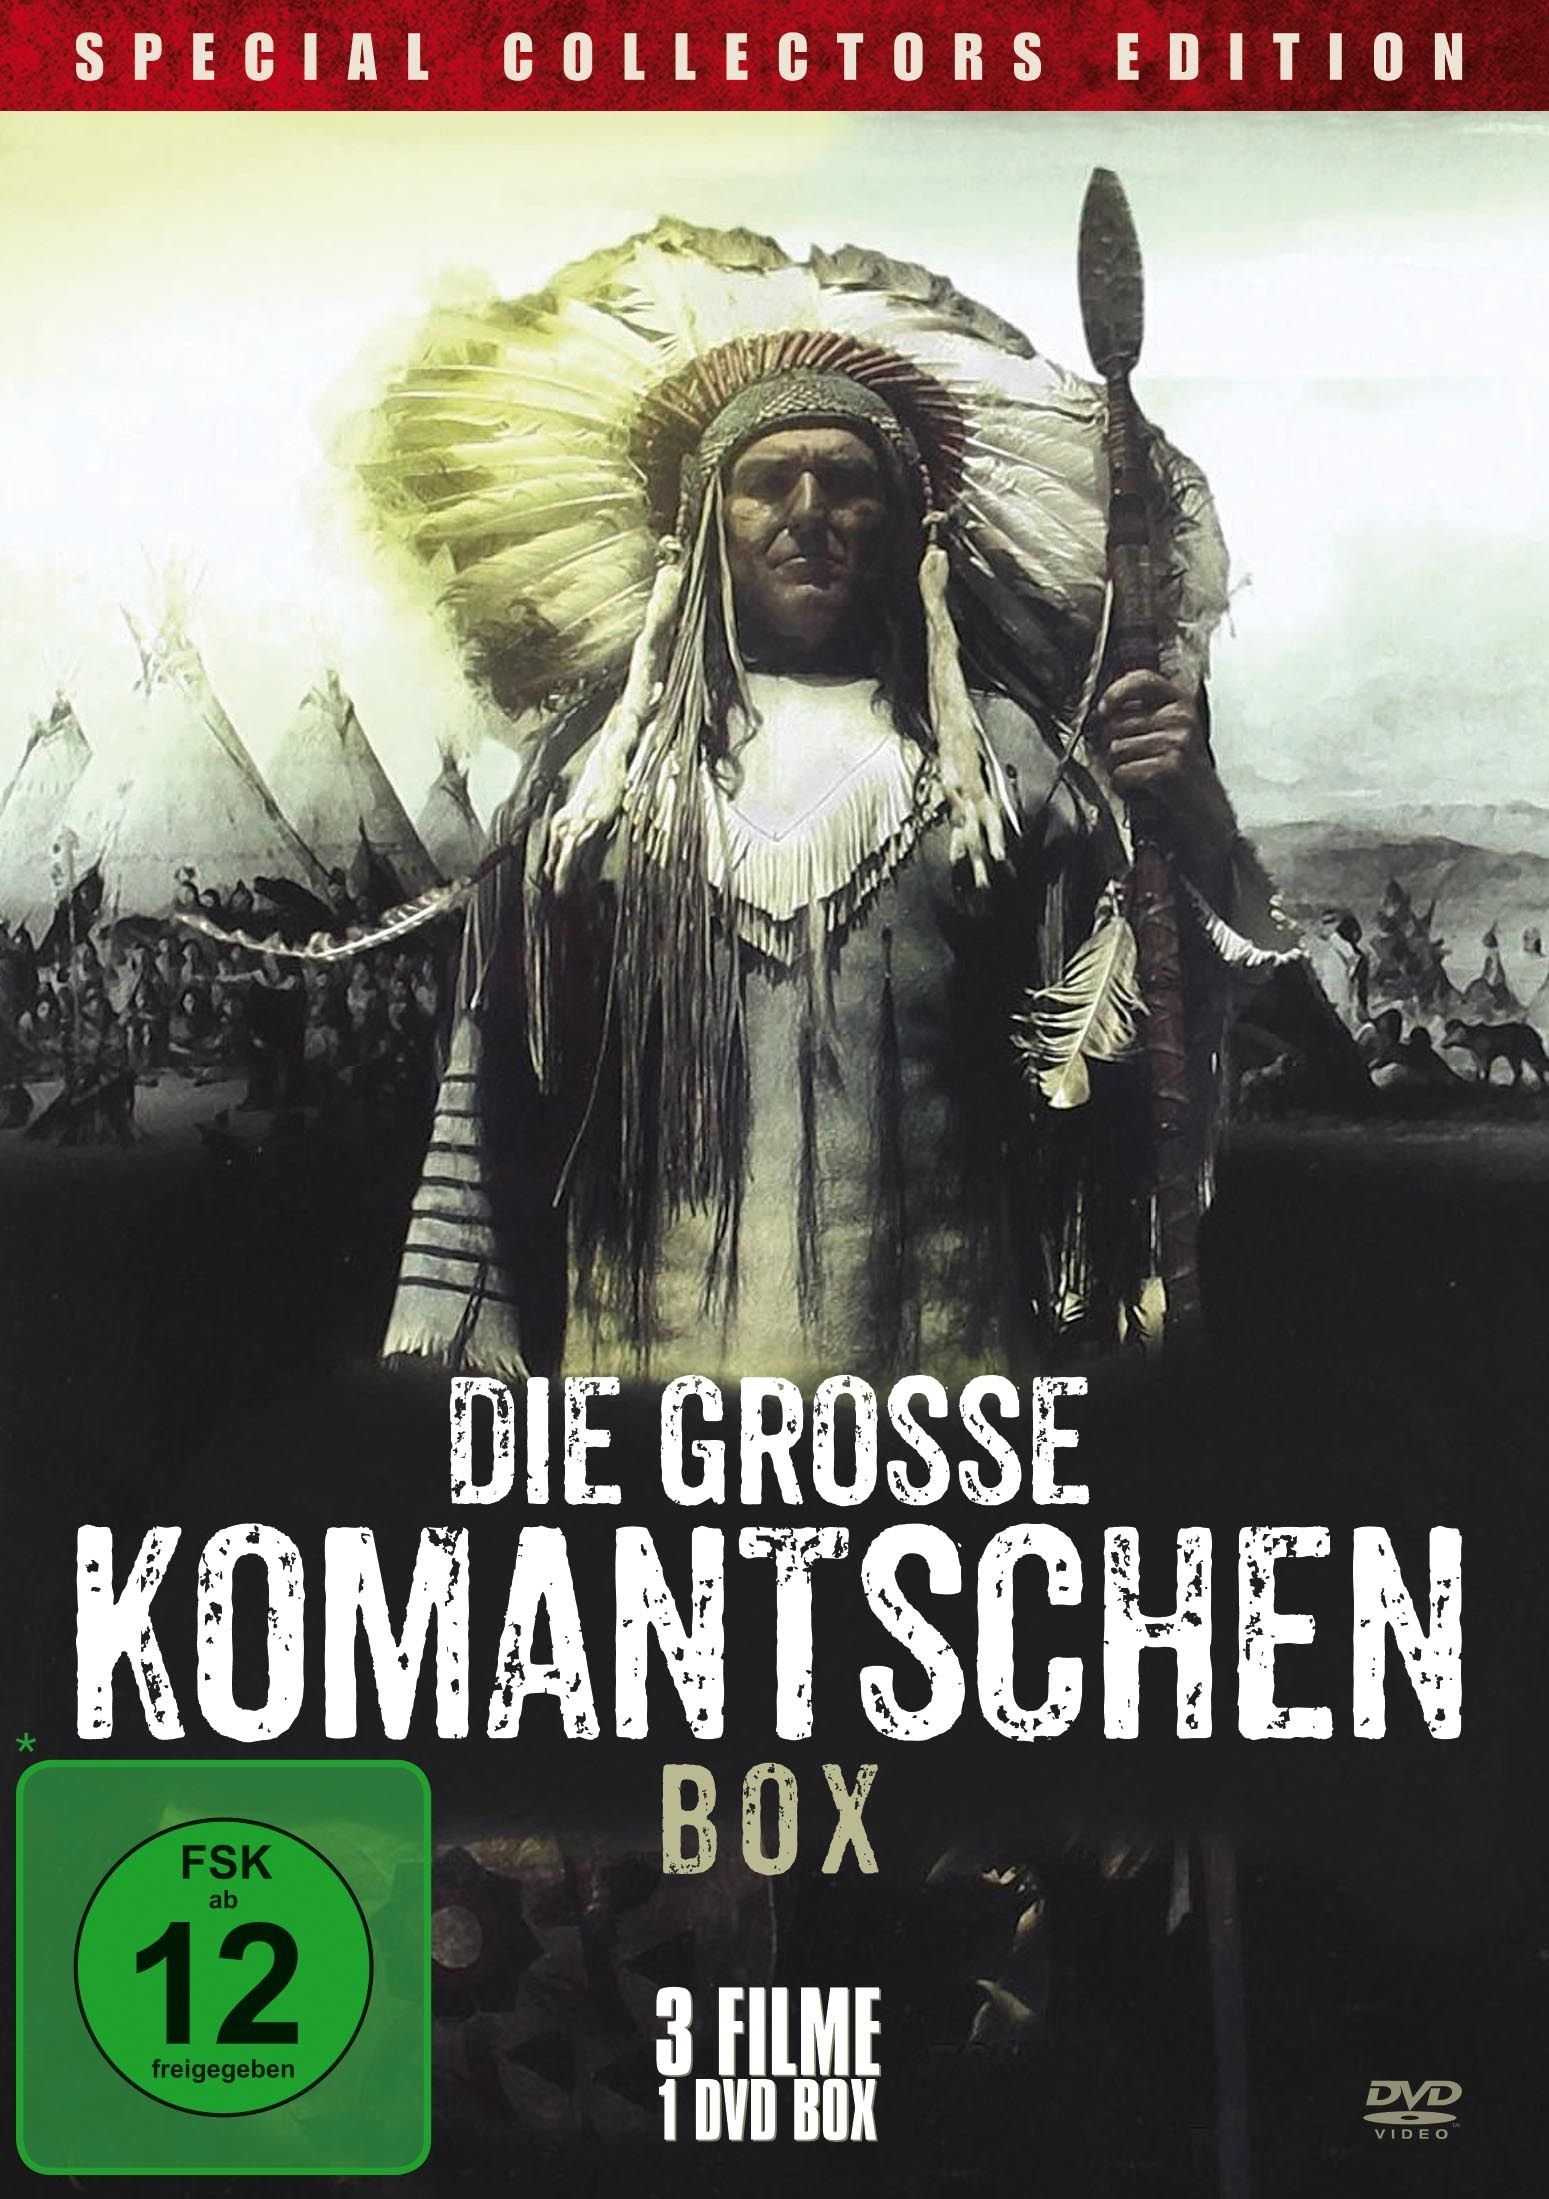 Image of Die grosse Komantschen Box